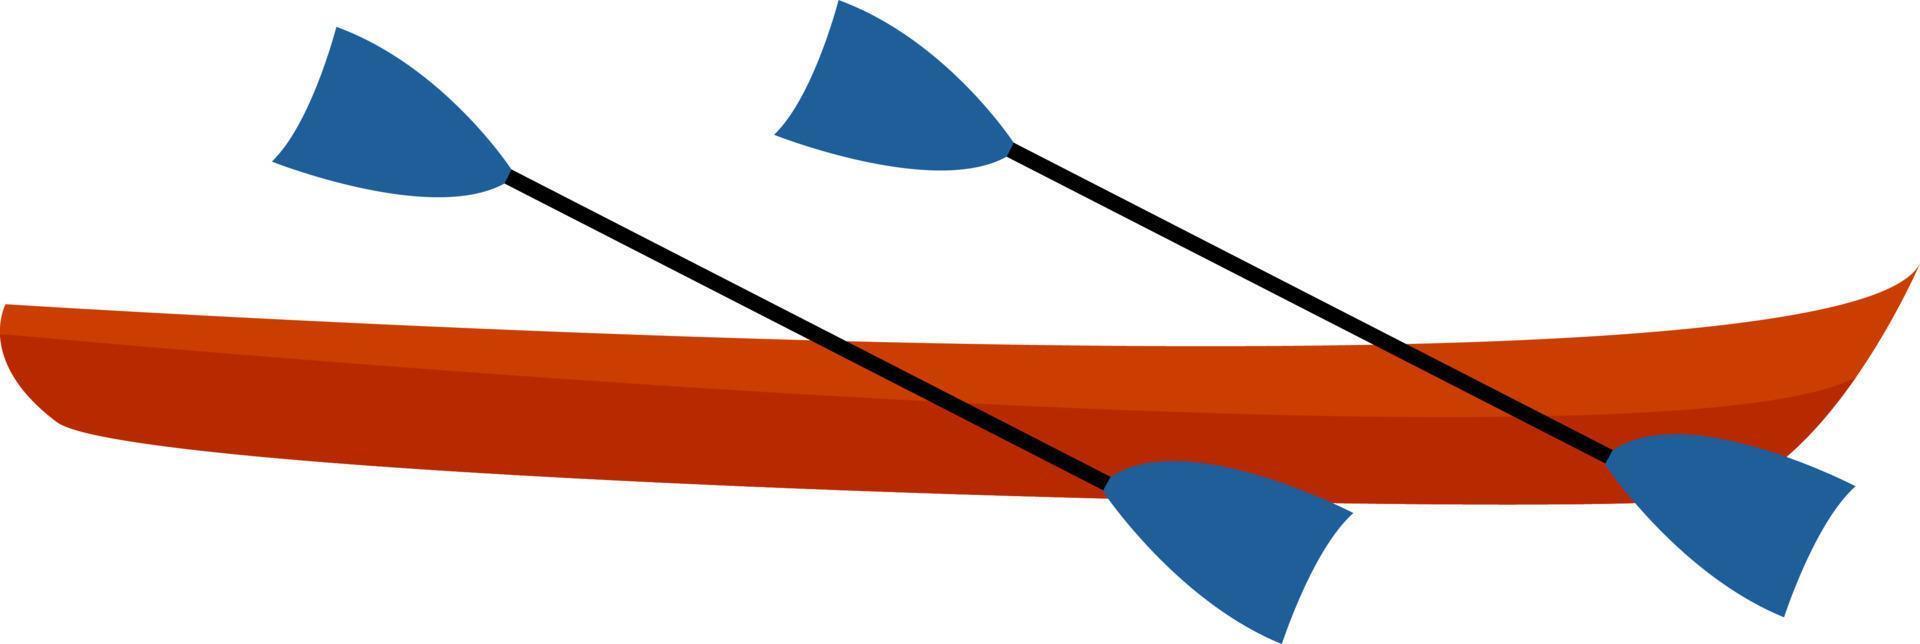 Canoe, illustration, vector on white background.